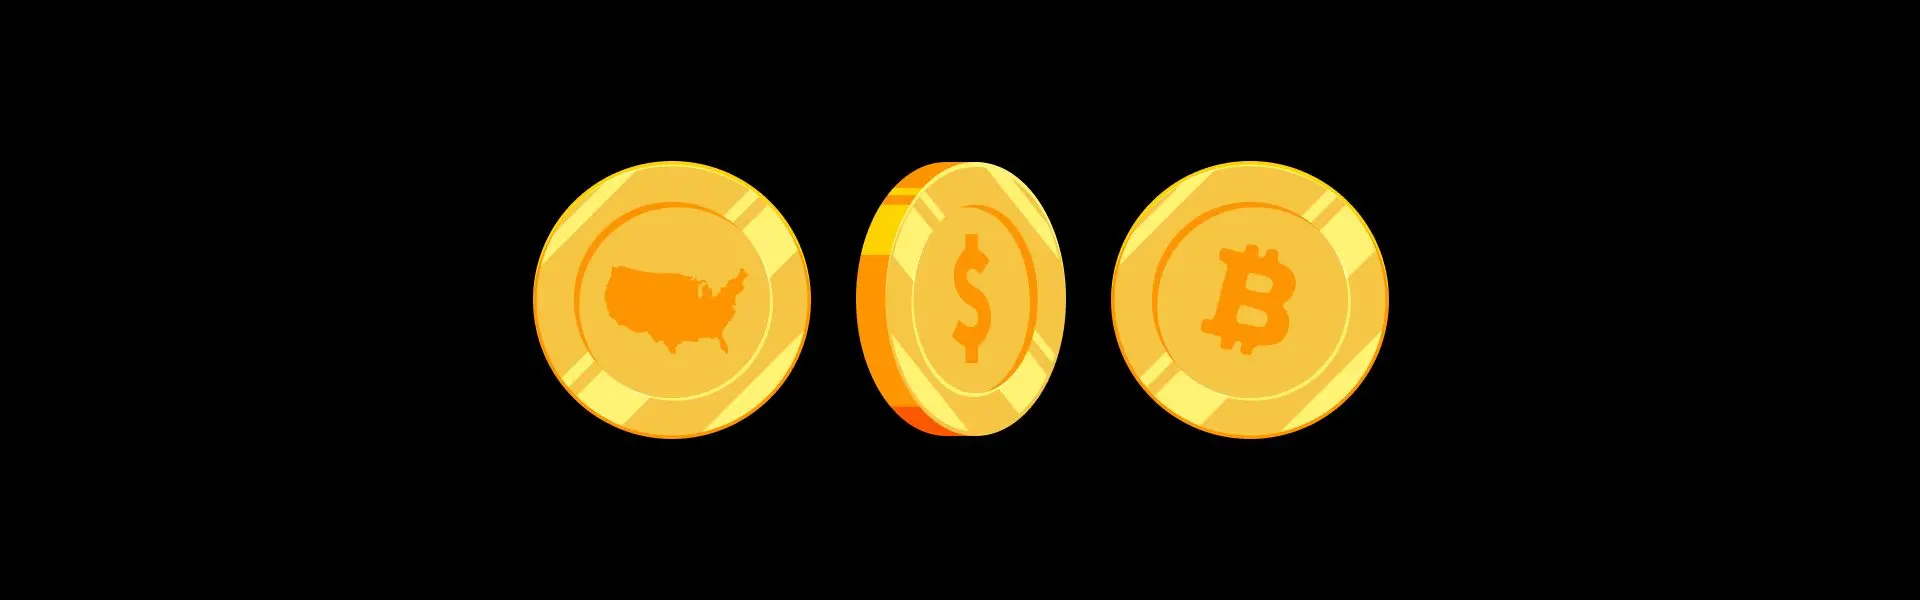 Уряд Сполучених Штатів перевів практично $1 мільярд у Bitcoin.